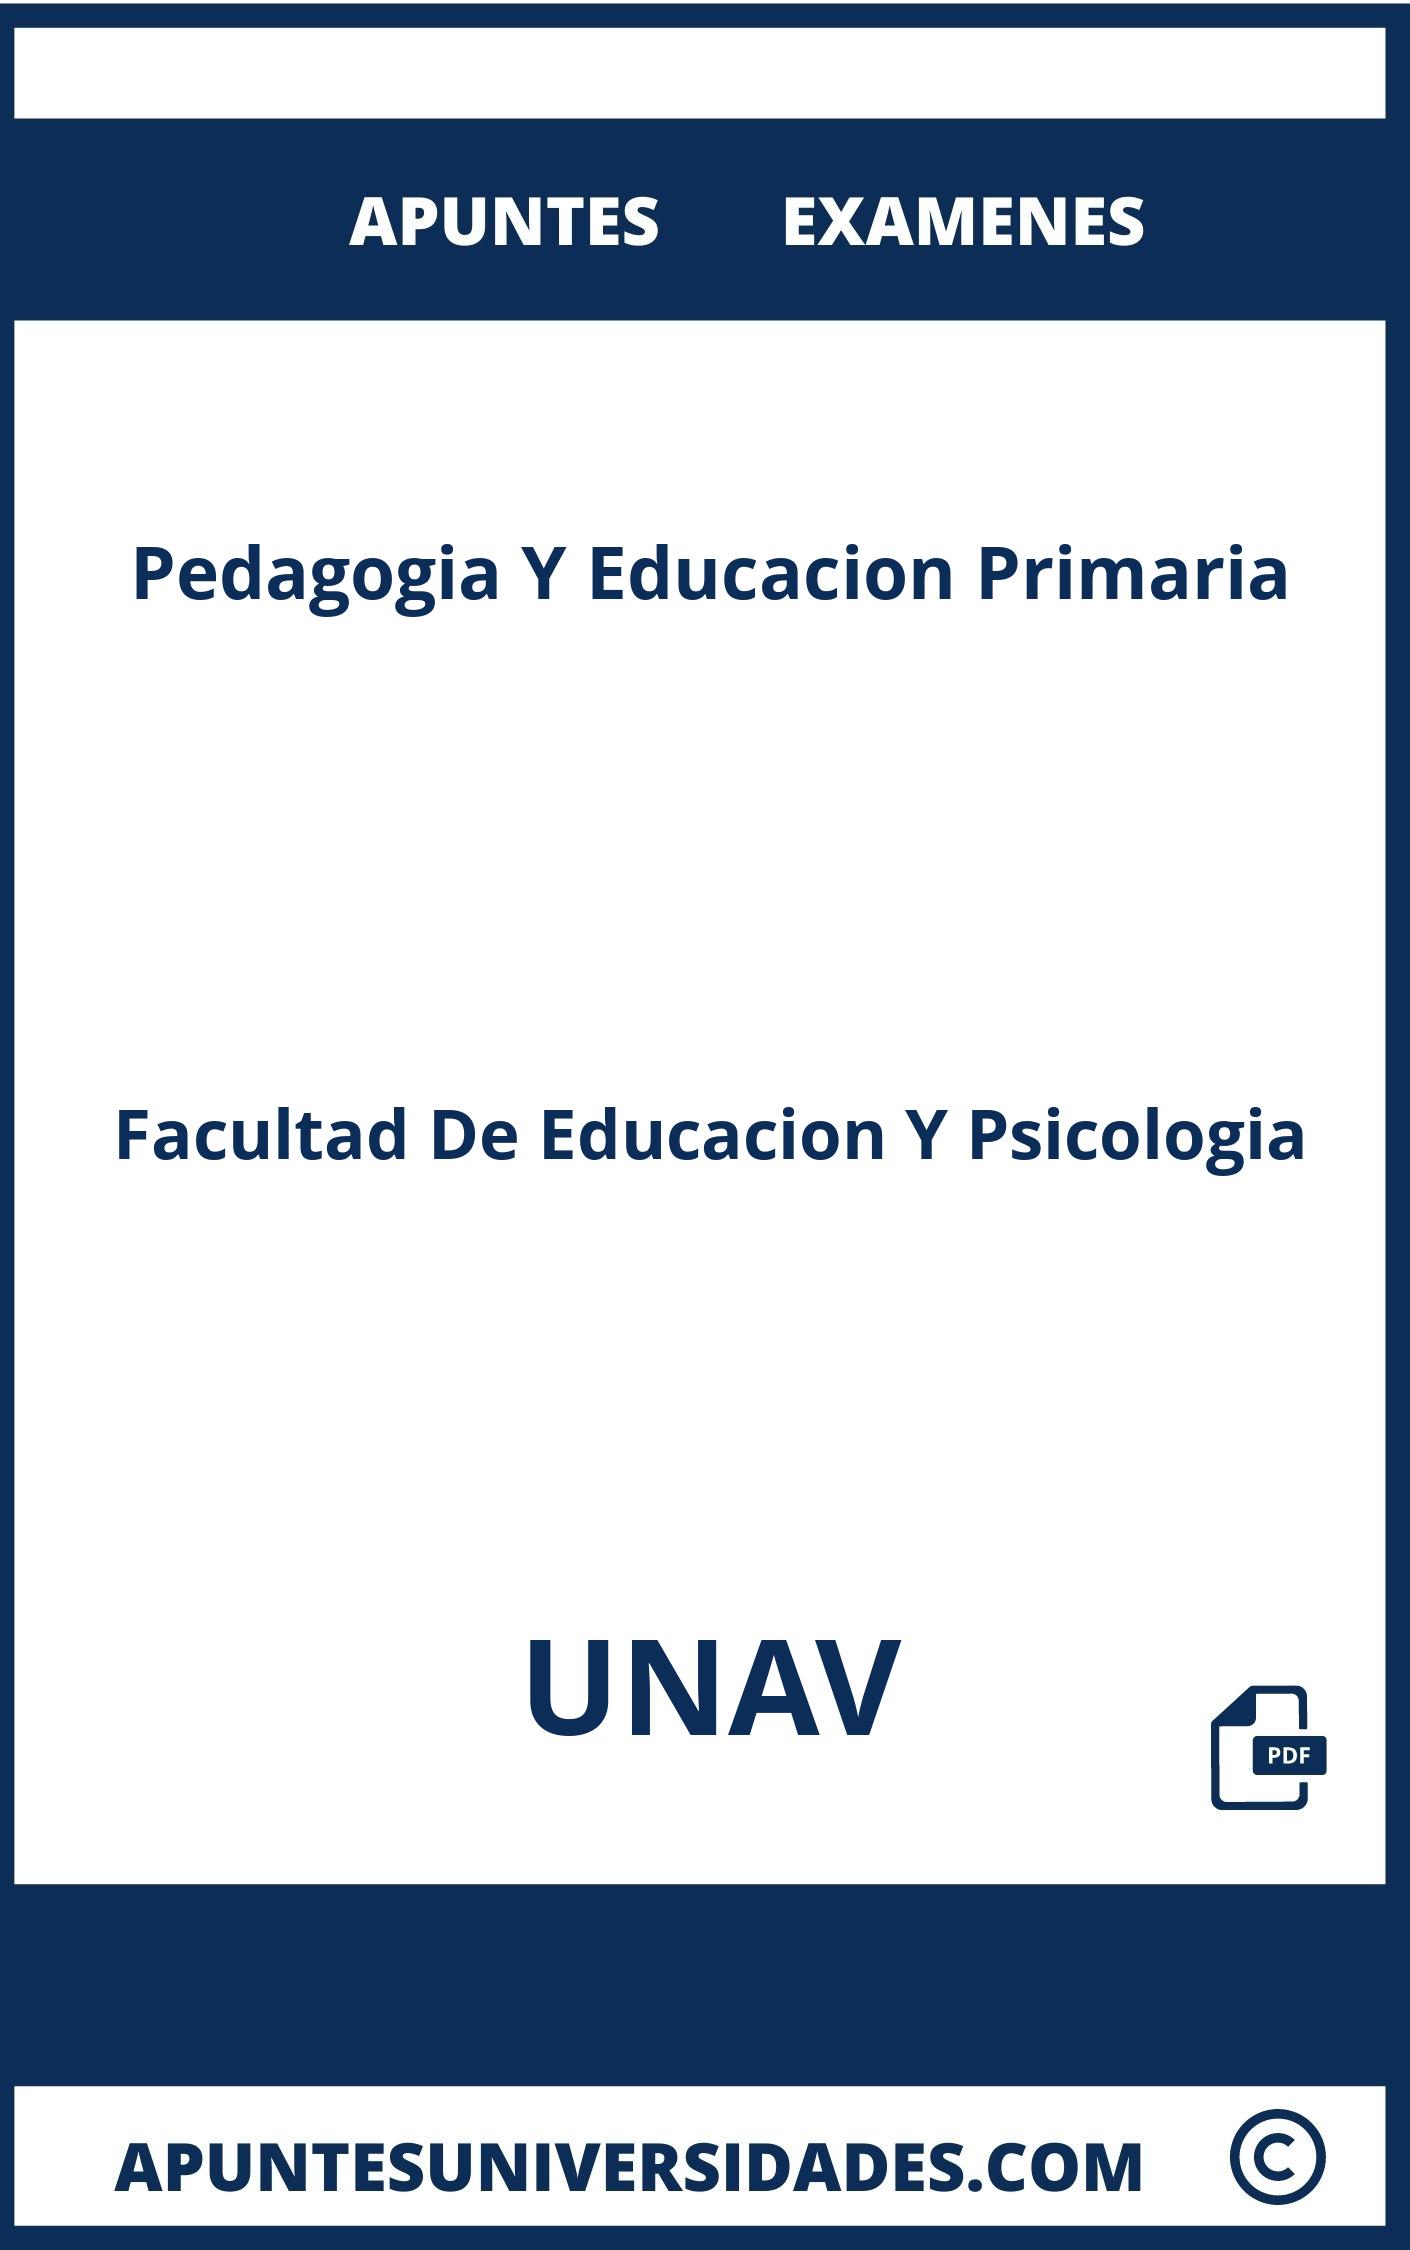 Examenes Pedagogia Y Educacion Primaria UNAV y Apuntes